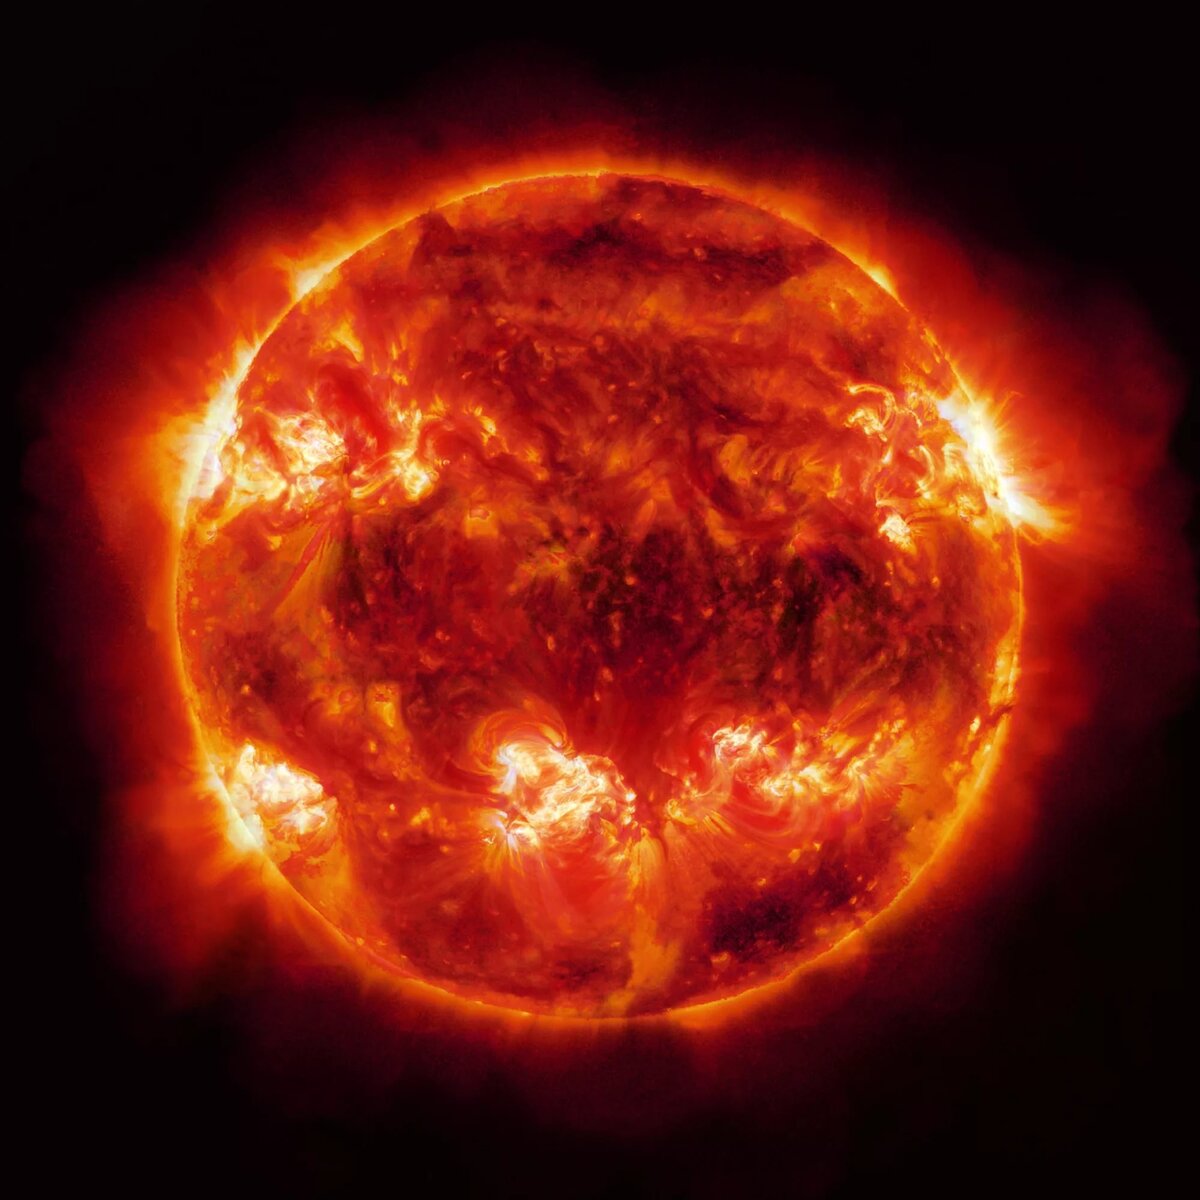  Излучение Солнца, распространяющееся в виде электромагнитных волн и проникающее в атмосферу Земли называется солнечной радиацией.-2